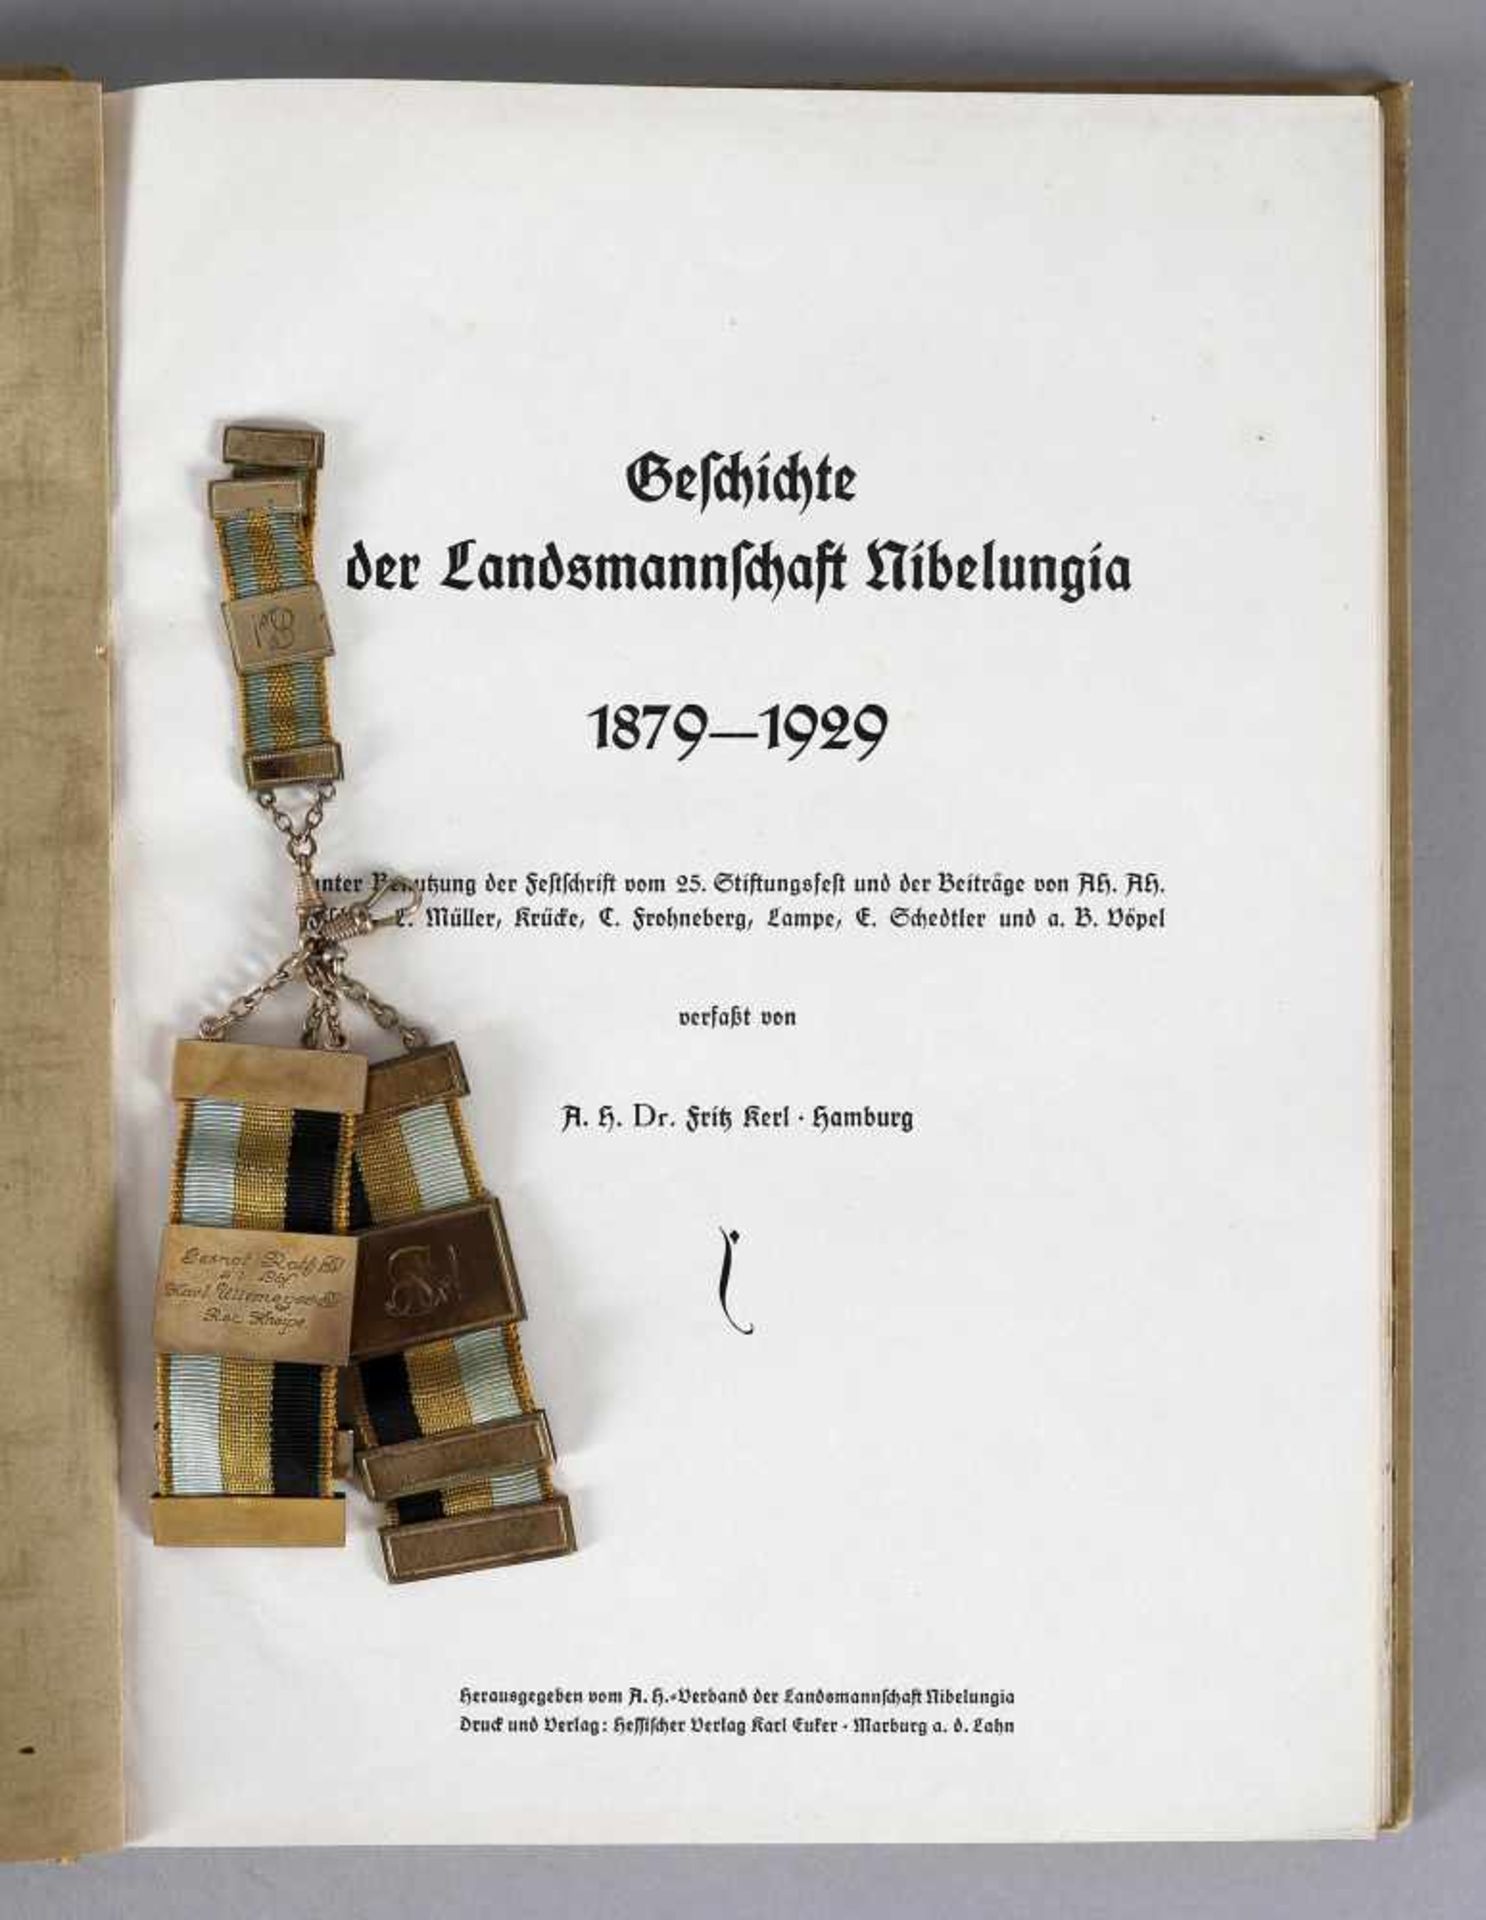 Buch 50 Jahre Nibelungia und Bierzipfel- Geschichte der Landsmannschaft Nibelungia 1879-1929,